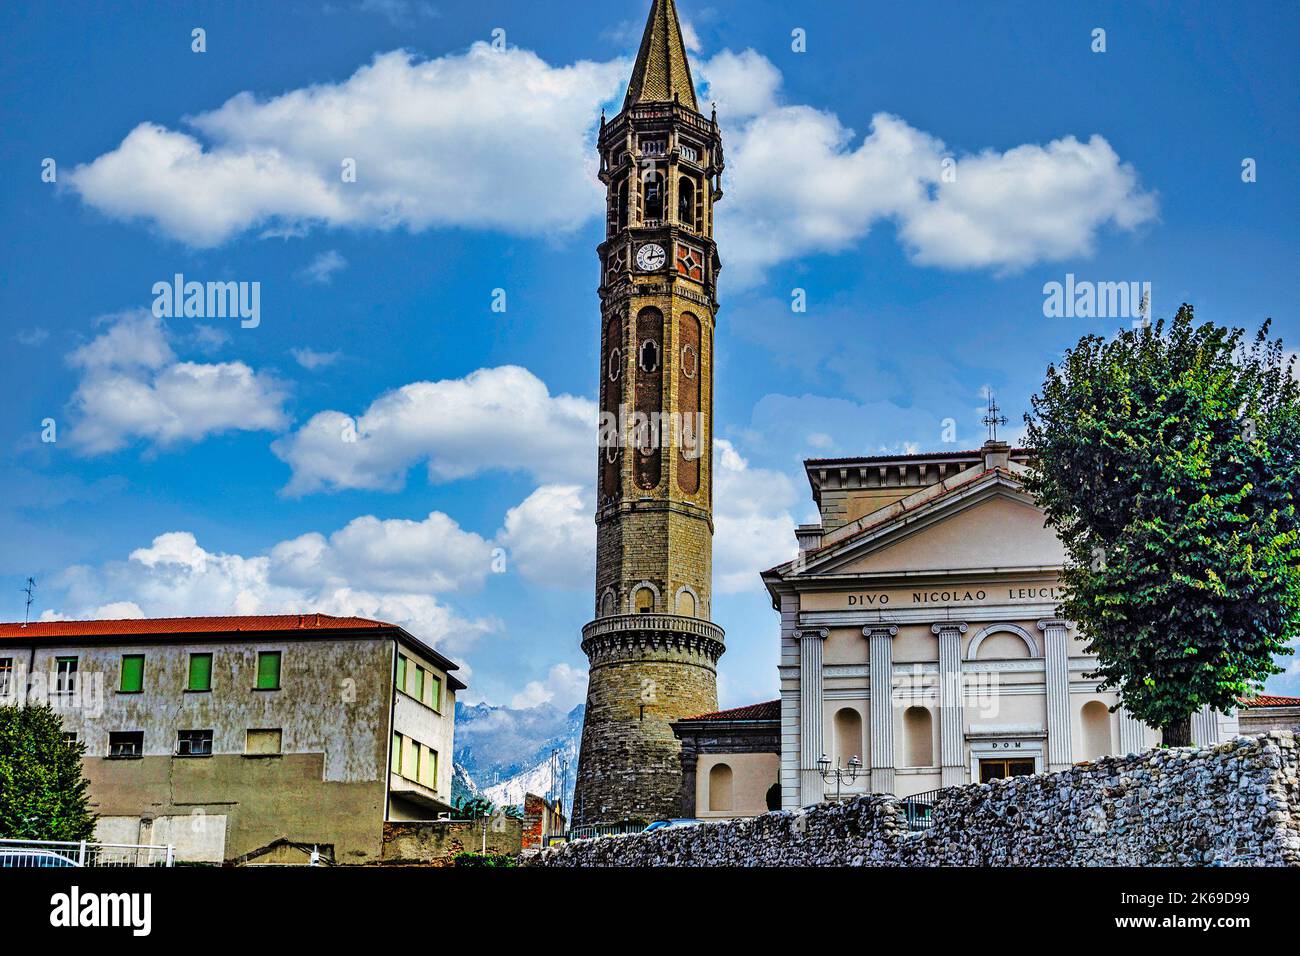 Der Glockenturm der Basilika San Nicolò, Lecco, Italien. Dem Heiligen Nikolaus, dem Schutzpatron von Lecco, gewidmet. Stockfoto